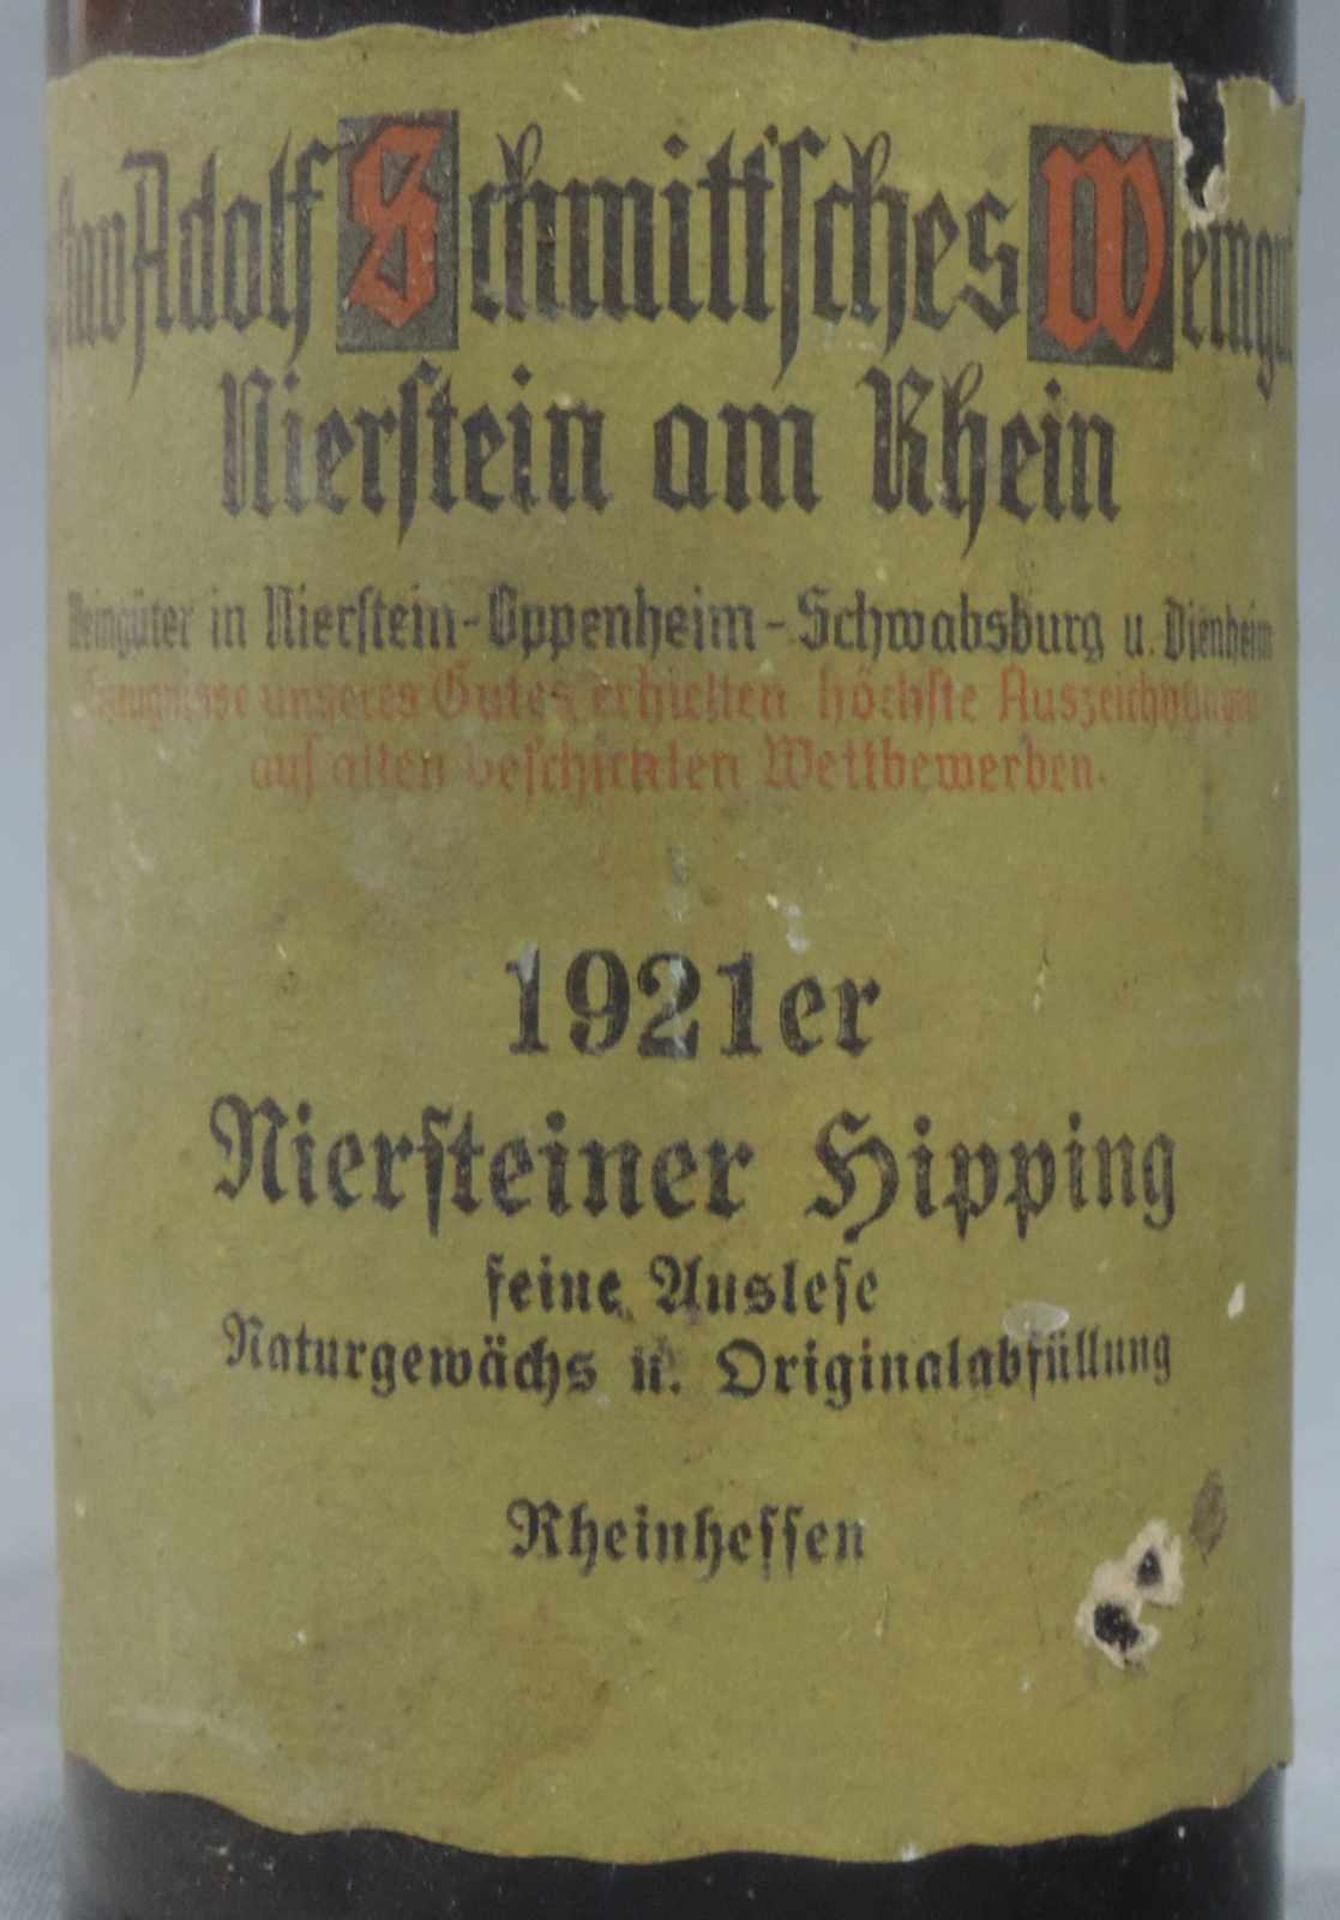 1921 Niersteiner Hipping, feine Auslese. 1 ganze Flasche. Naturgewächs und Originalabfüllung. Gustav - Image 4 of 10